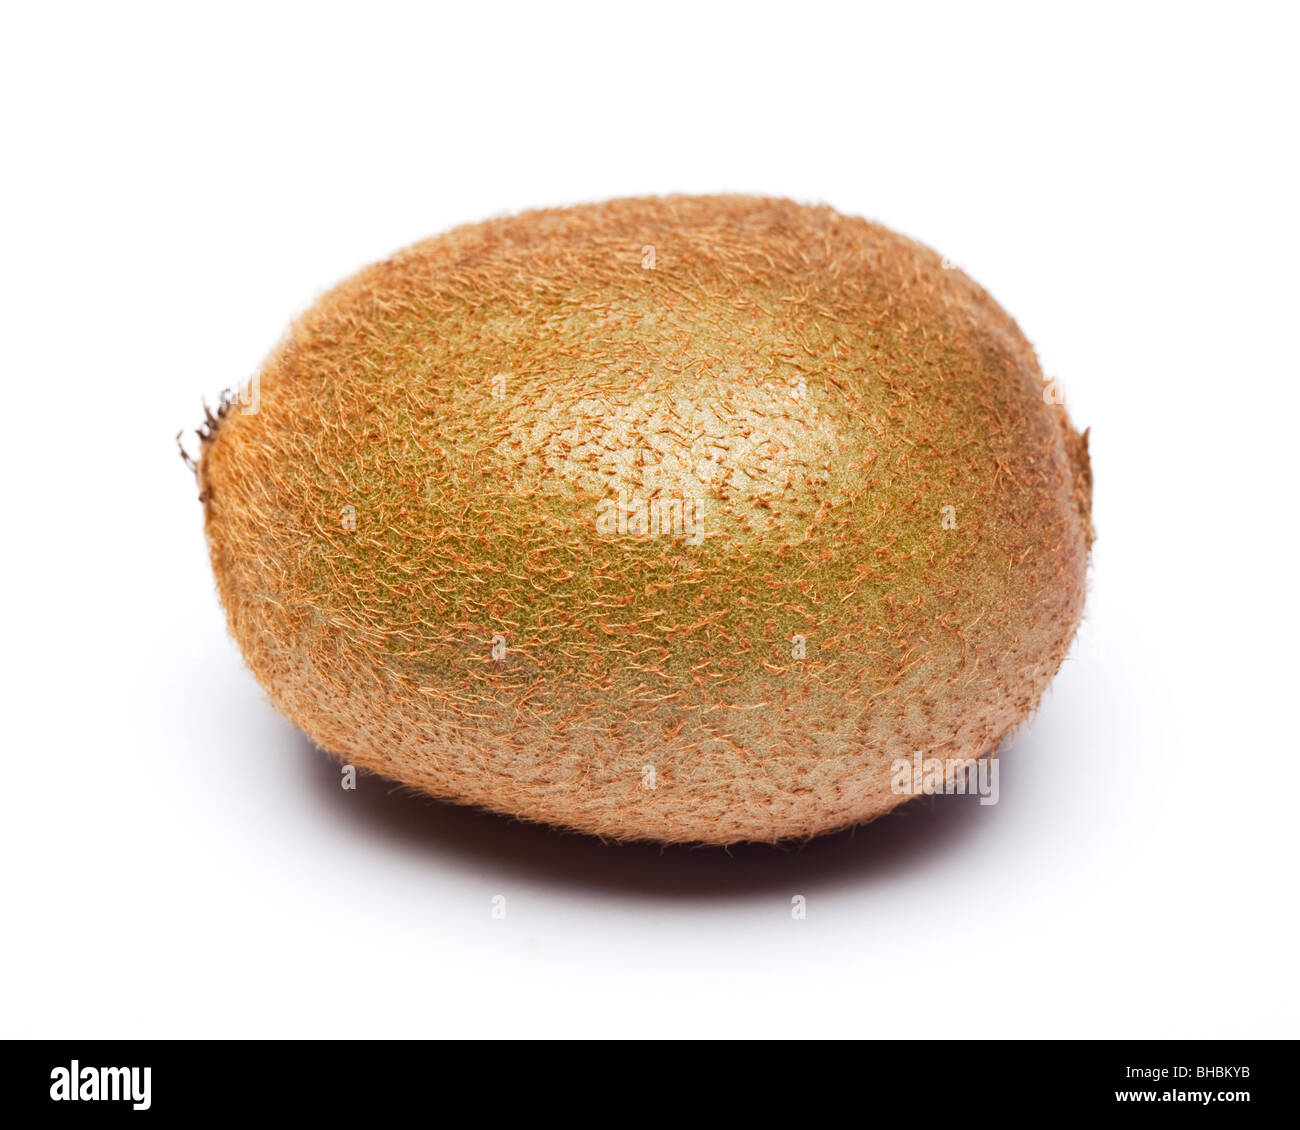 Kiwifruit Stock Photo